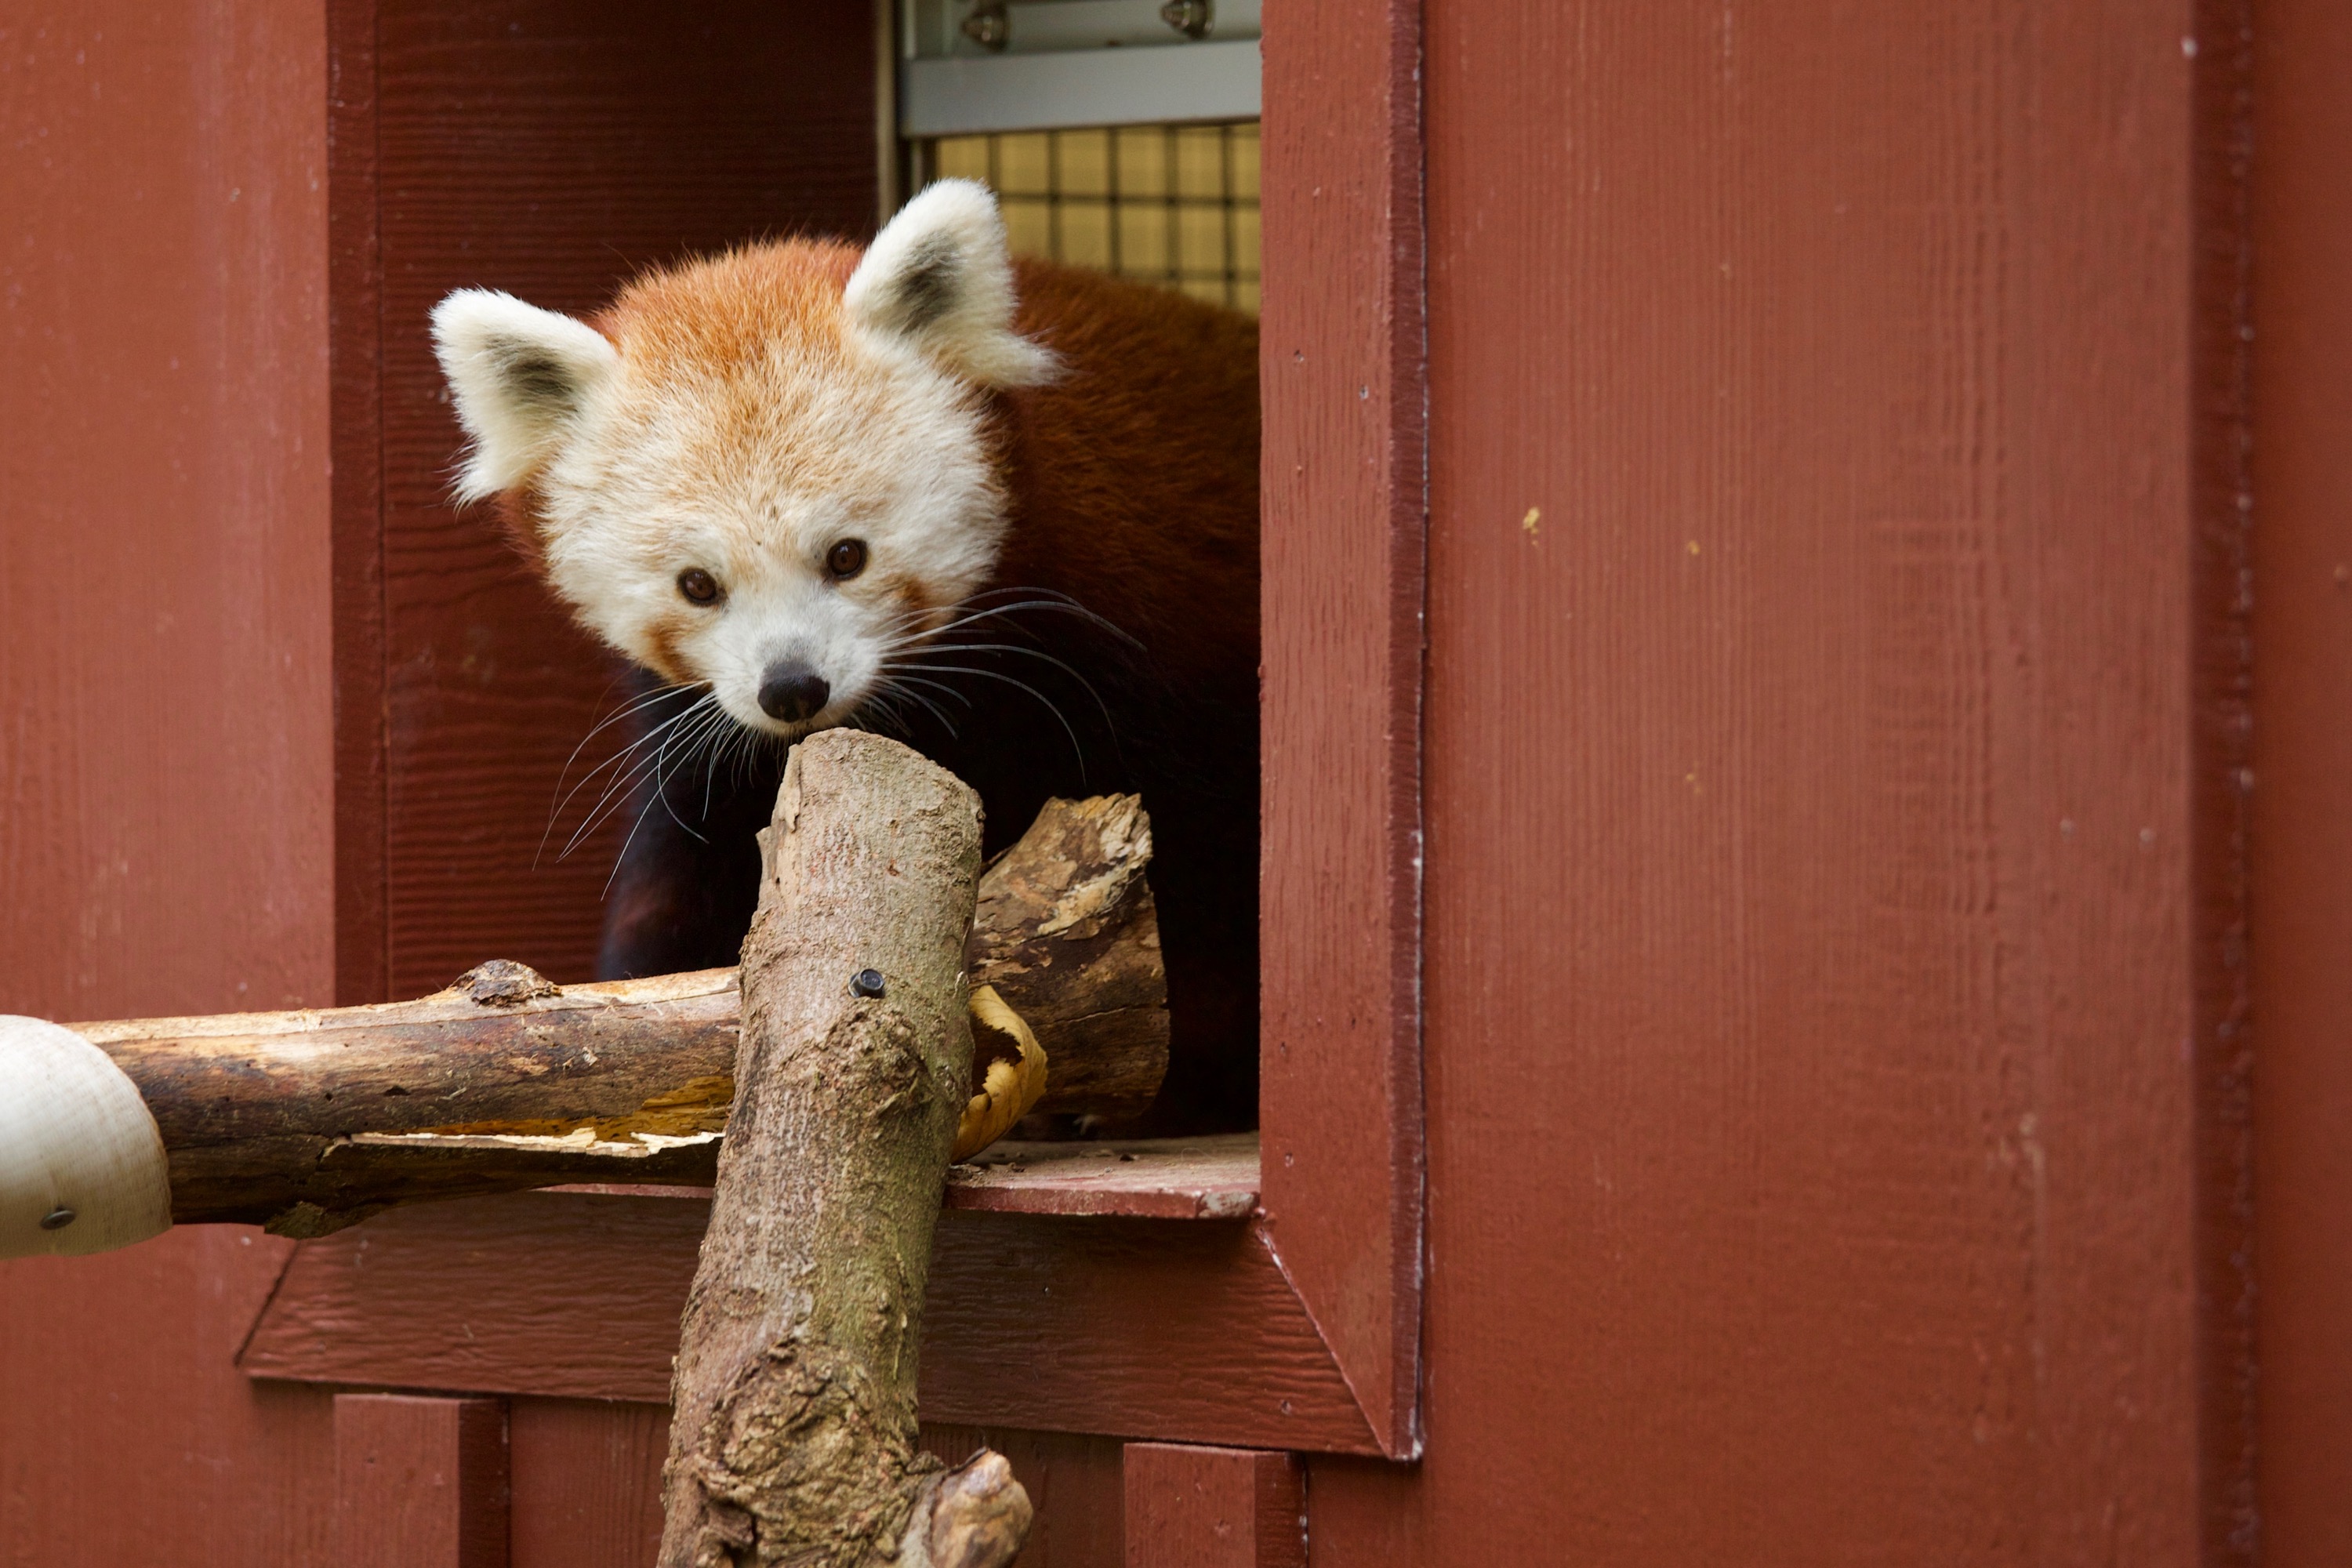 Red Panda at the Beardsley Zoo